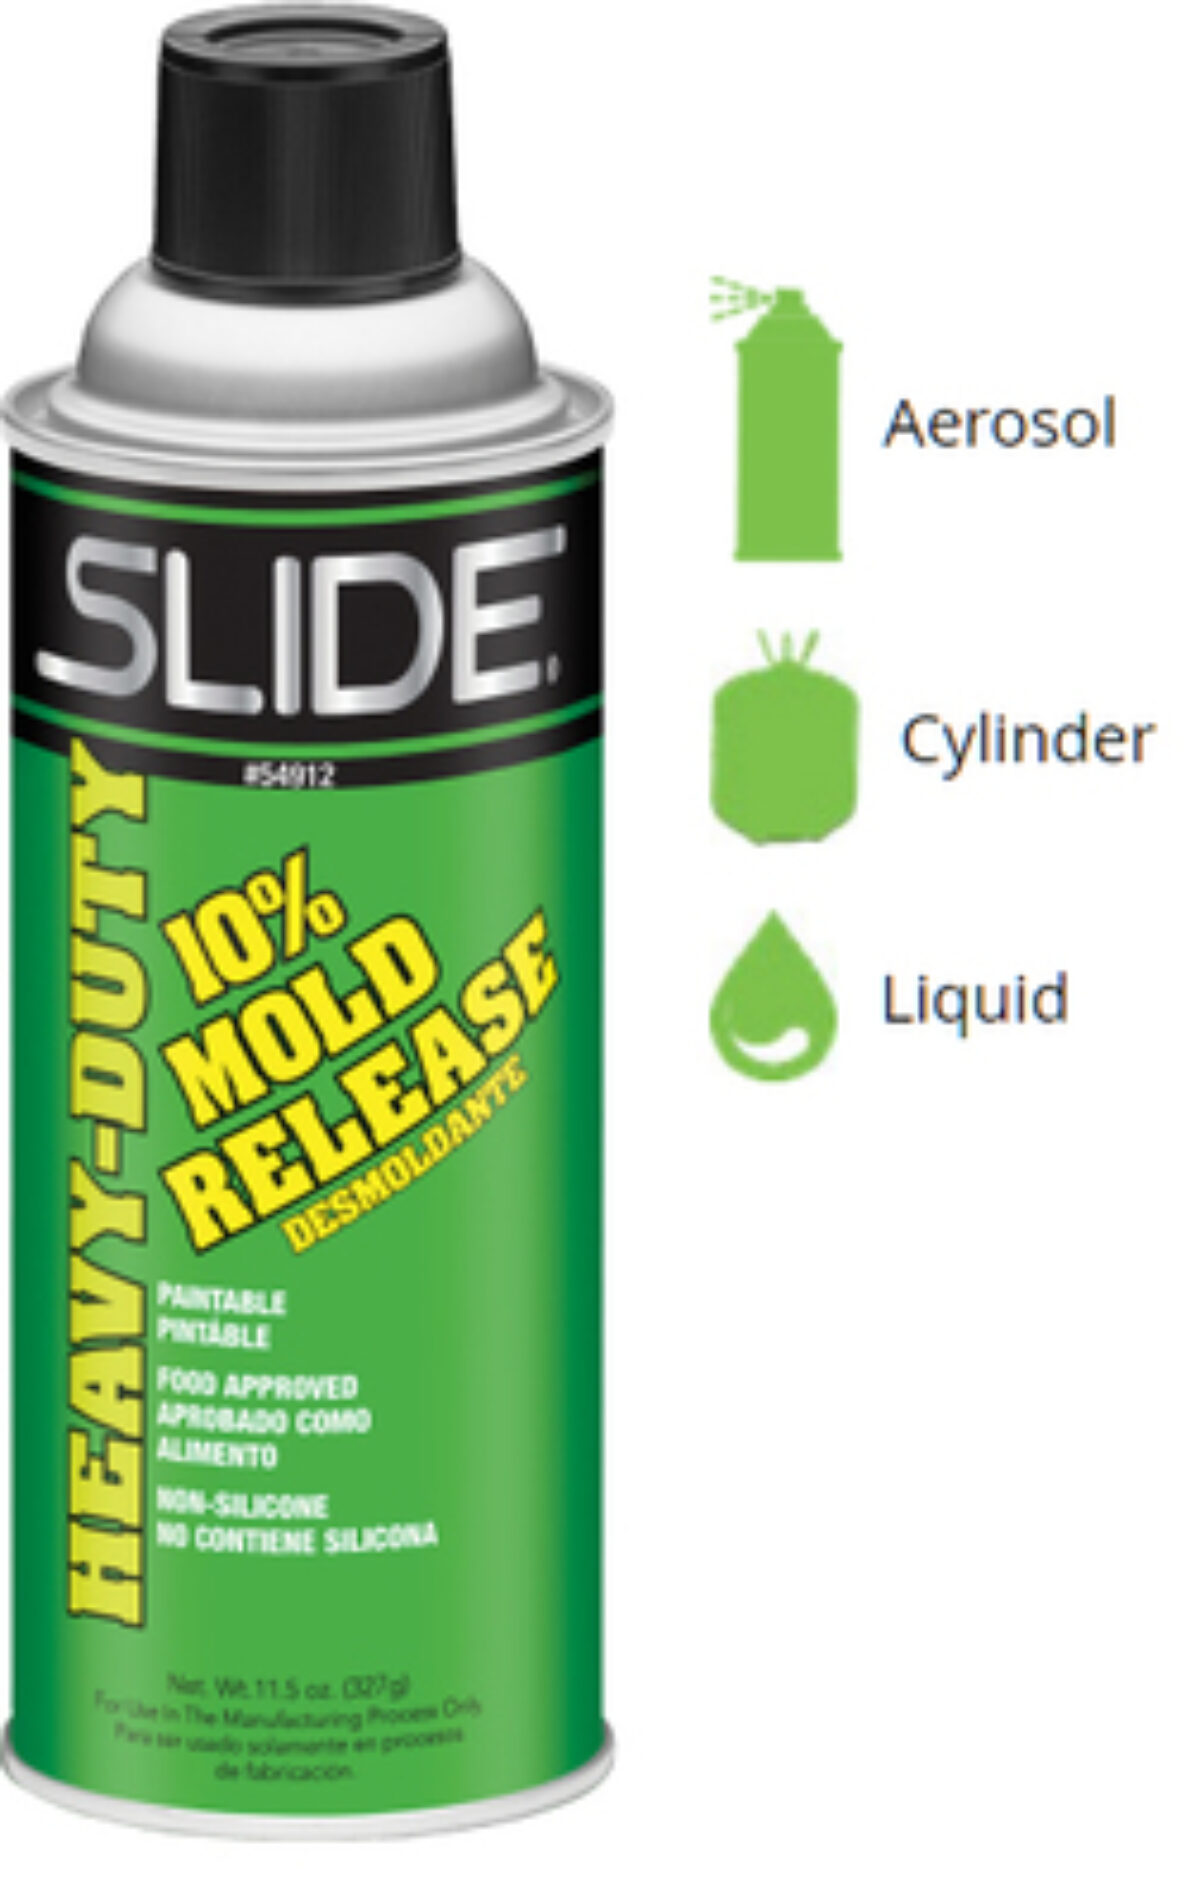 Slide Mold Release Agent, 35 lb Aerosol Cylinder, 40035N